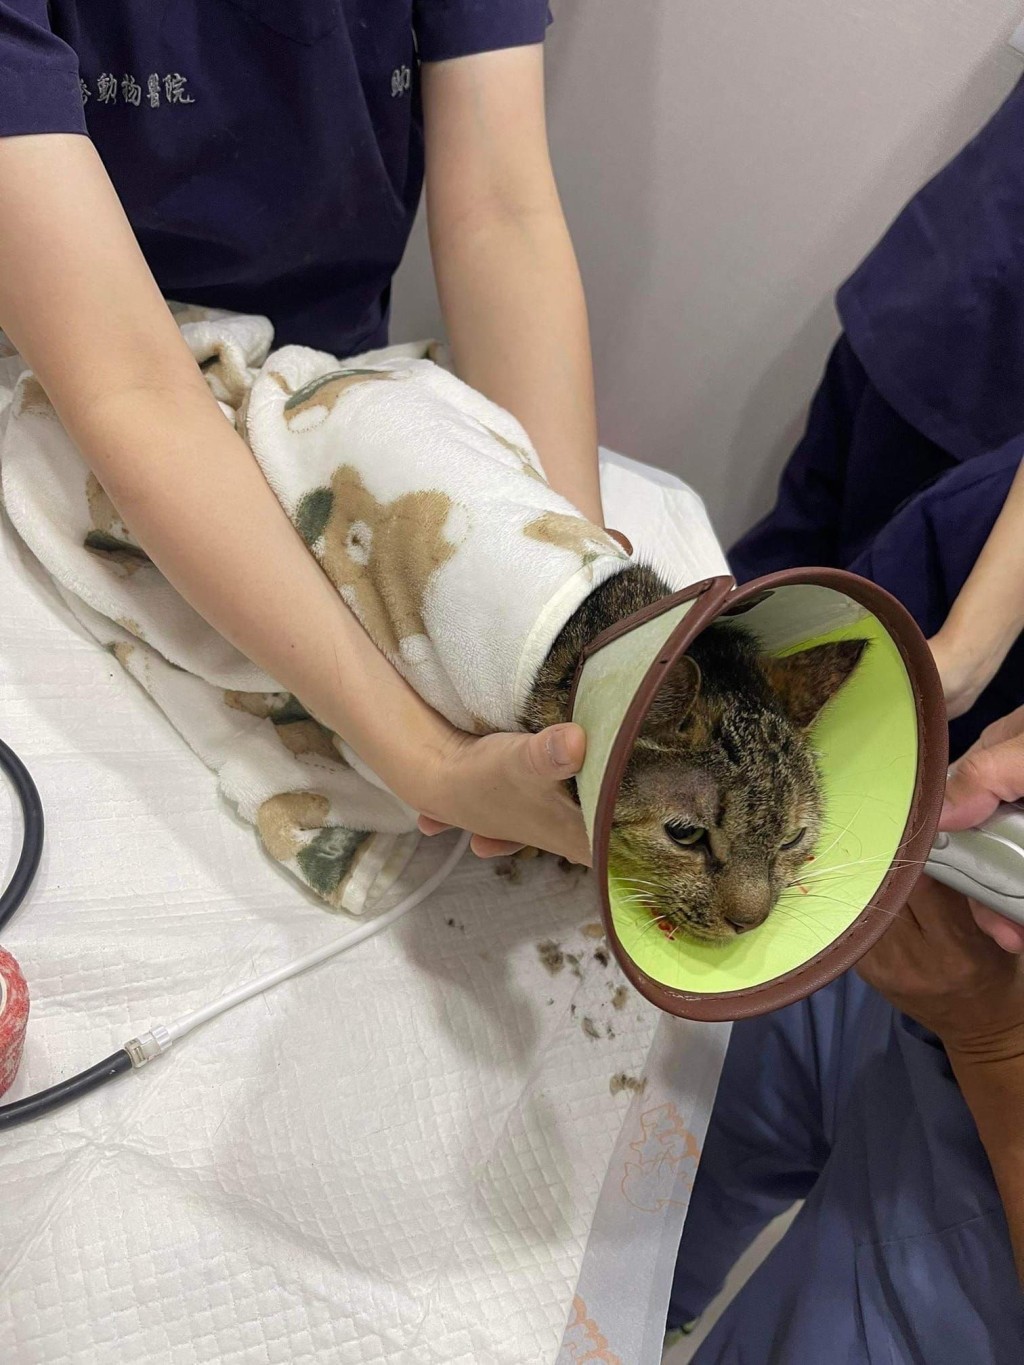 8楼住户的虎斑猫“妹妹”稍早获救已送至动物医院。ETtoday